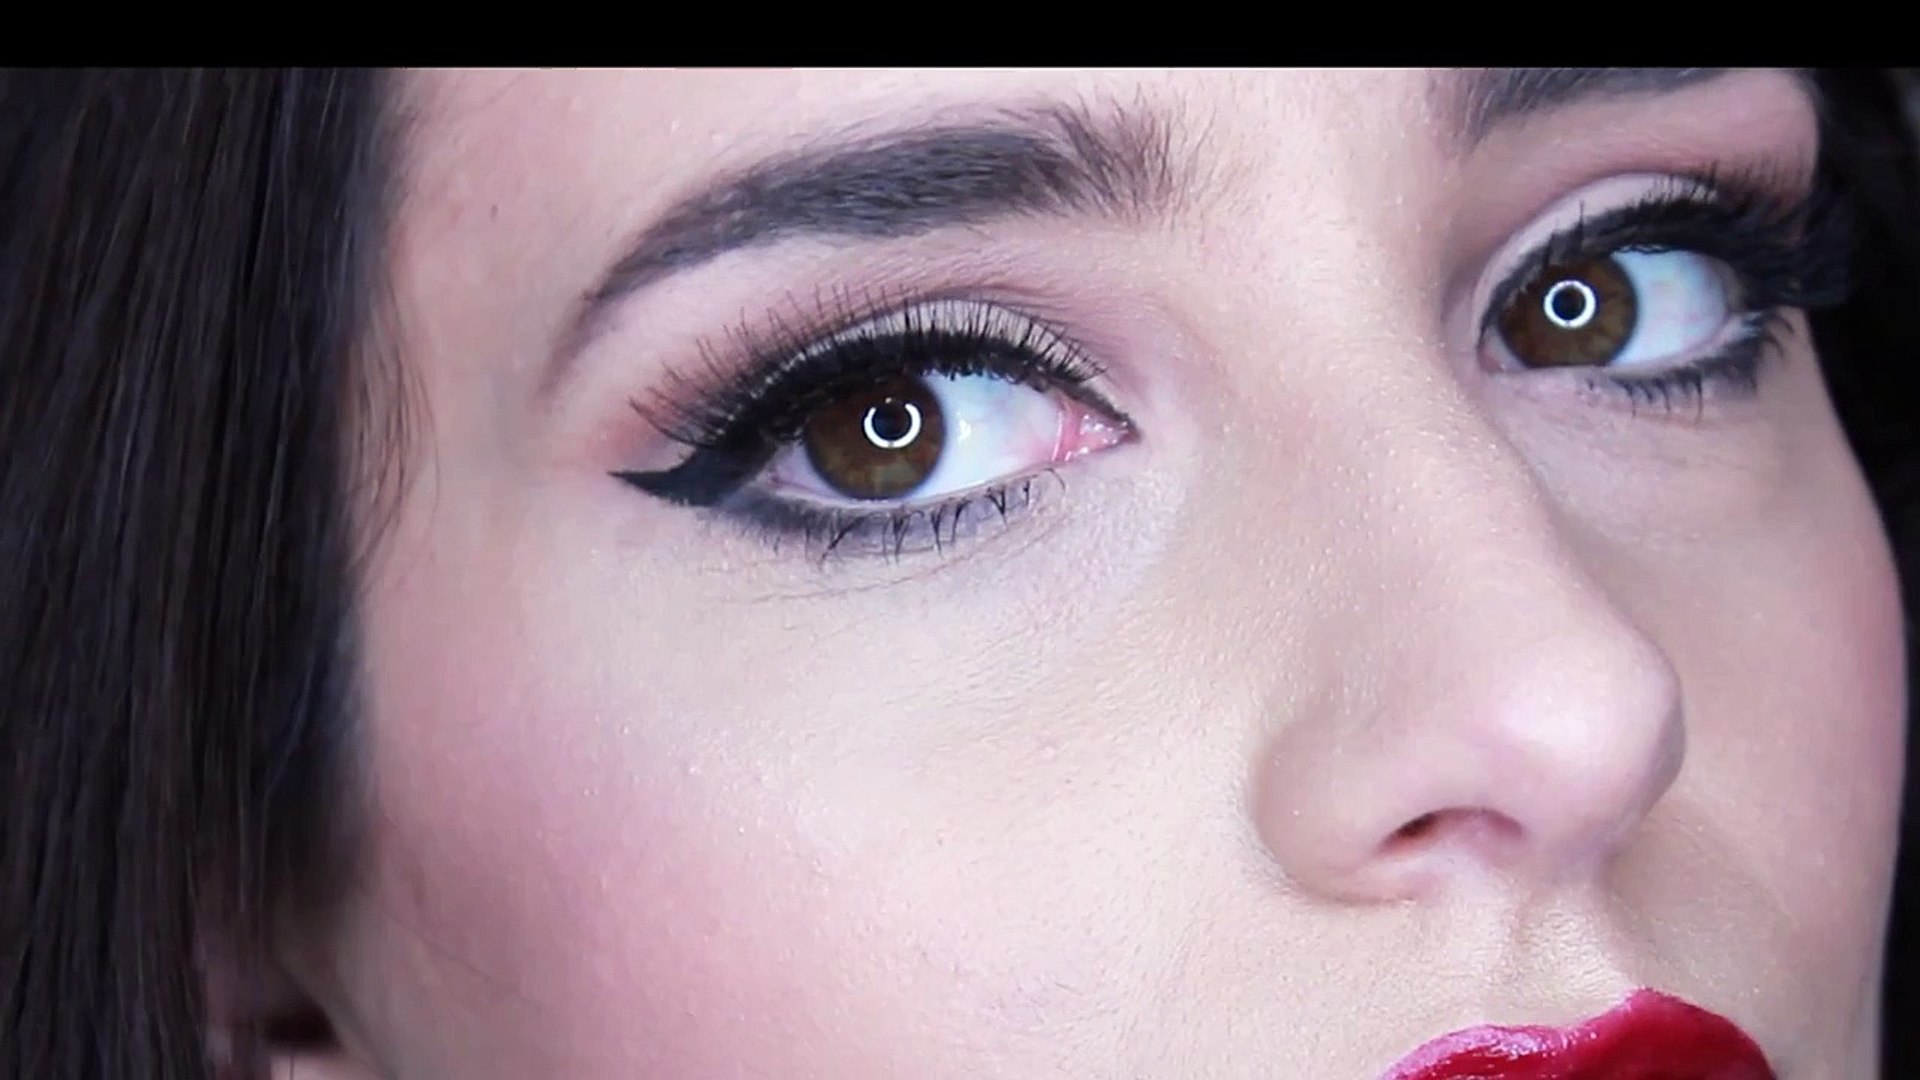 Lana Del Rey Makeup Tutorial | Honeymoon inspired